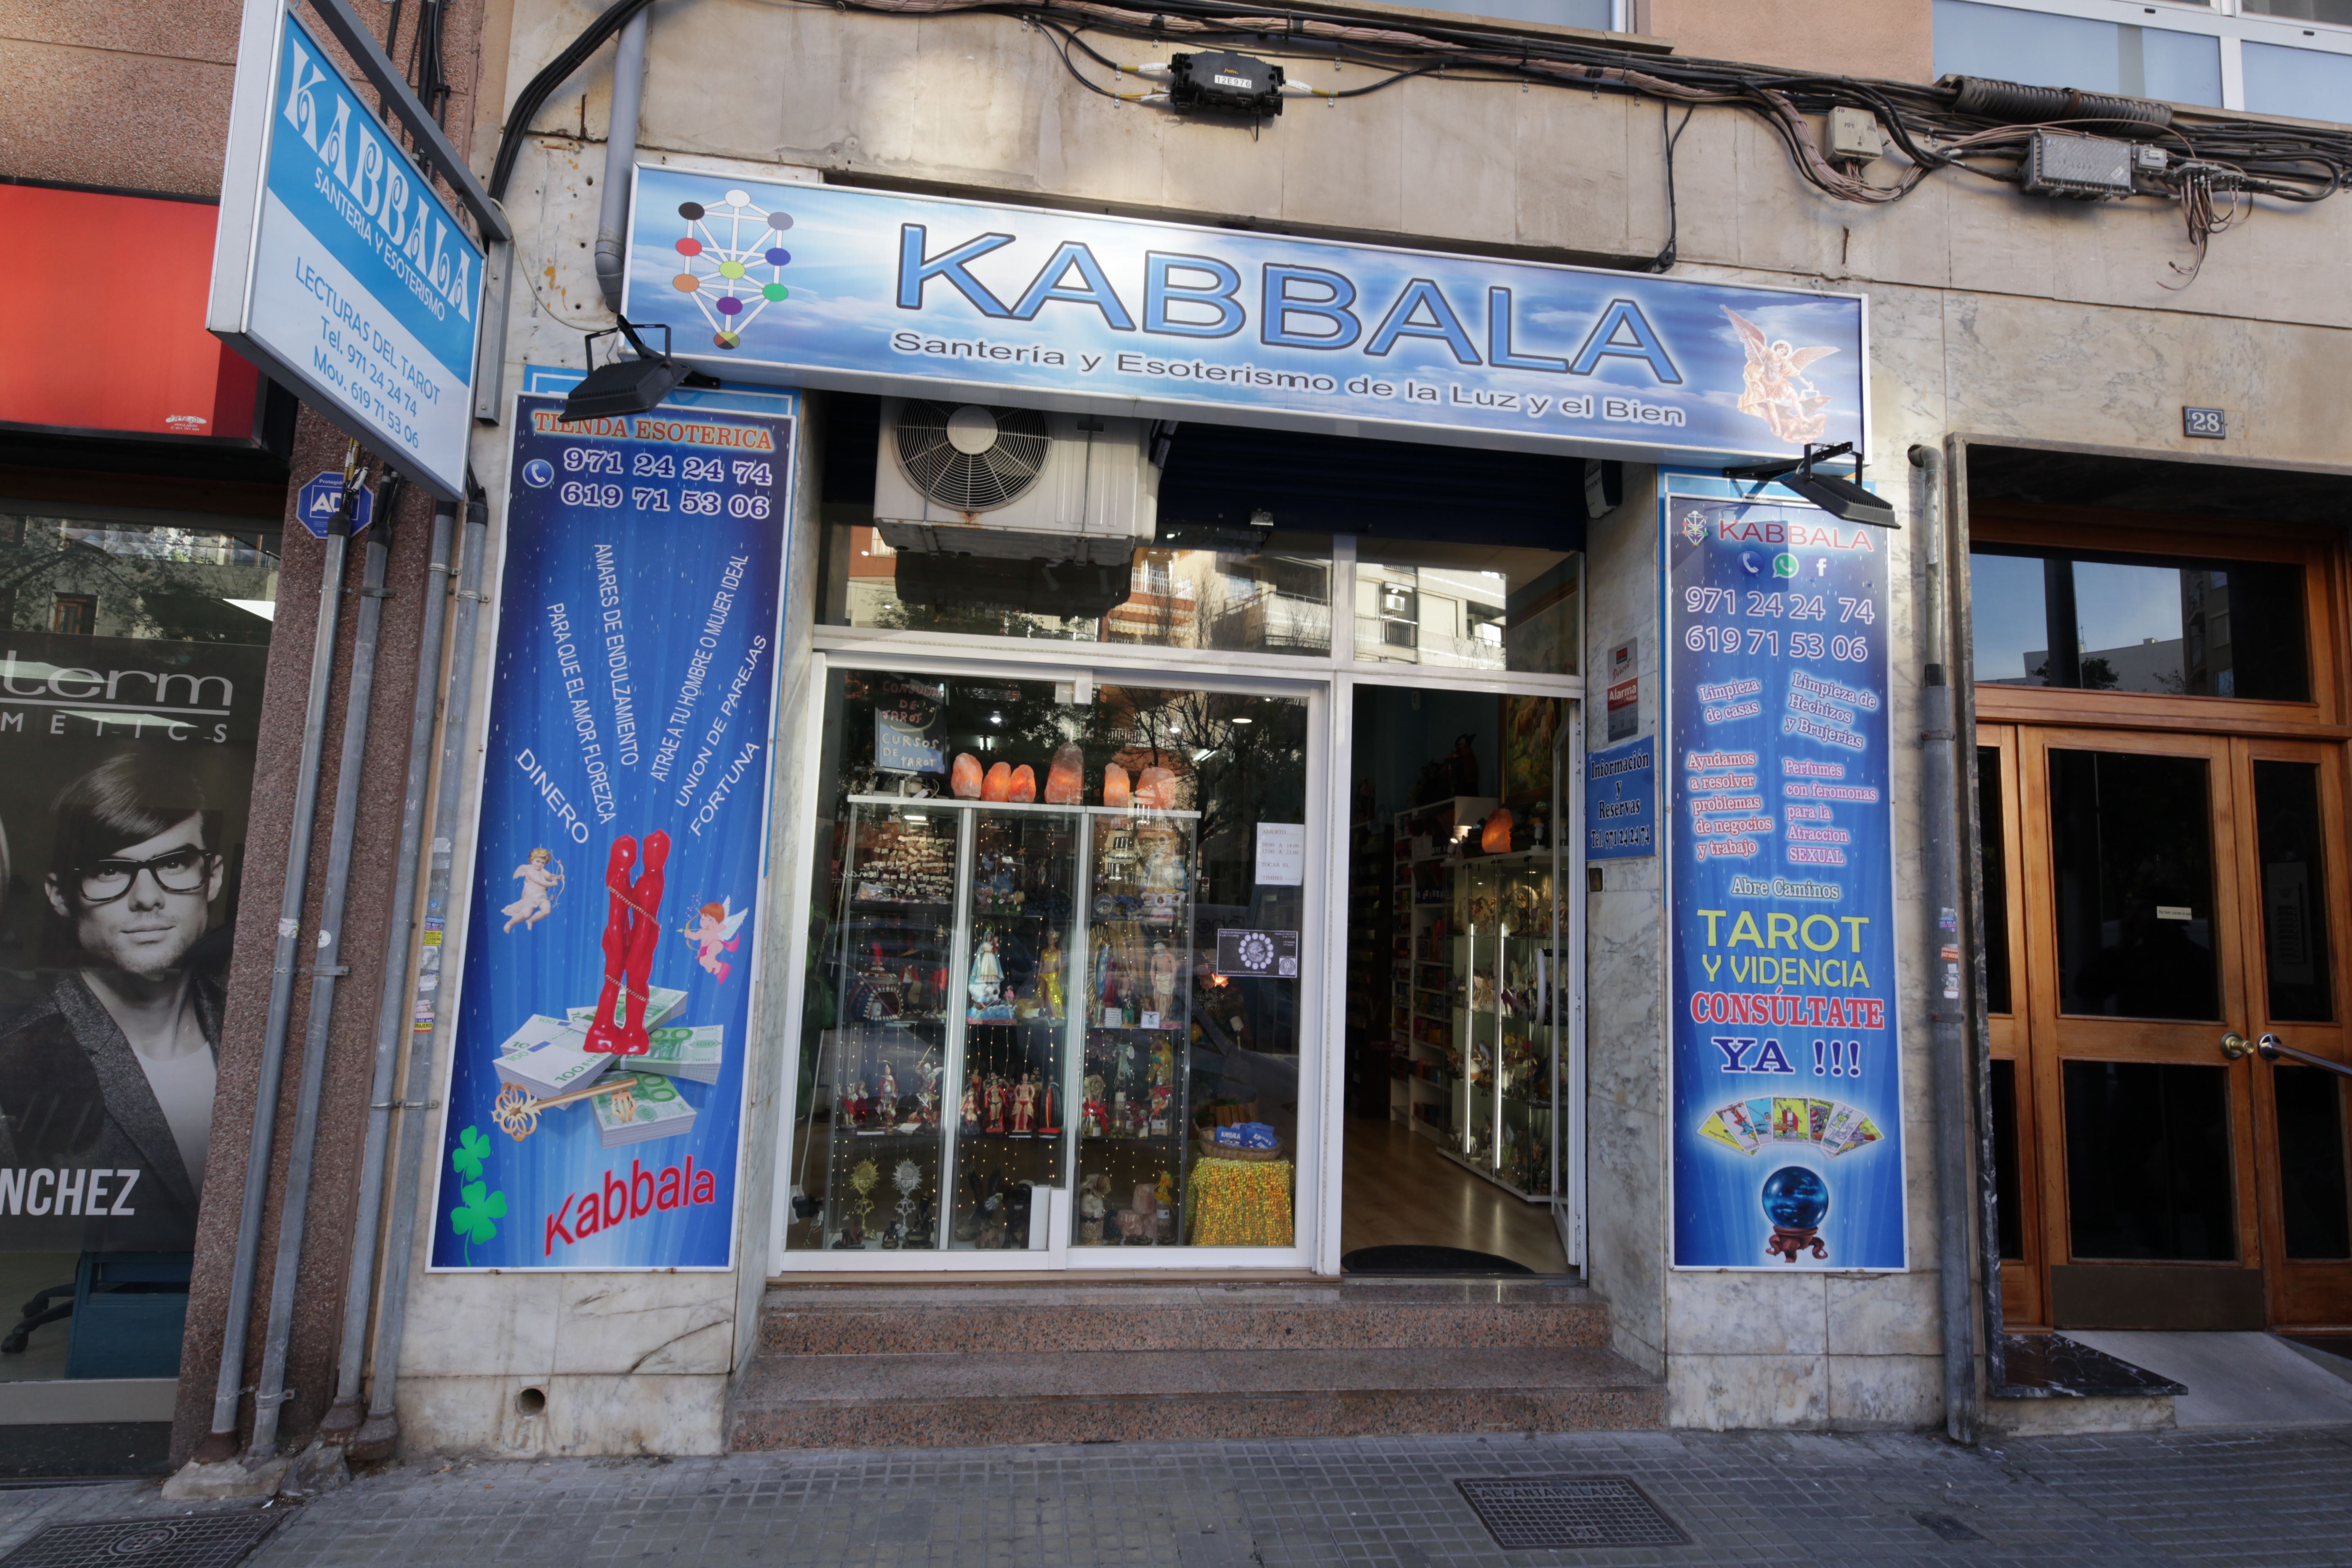 Foto 1 de Tiendas esotéricas en Palma | Kabbala Santería Esotérica